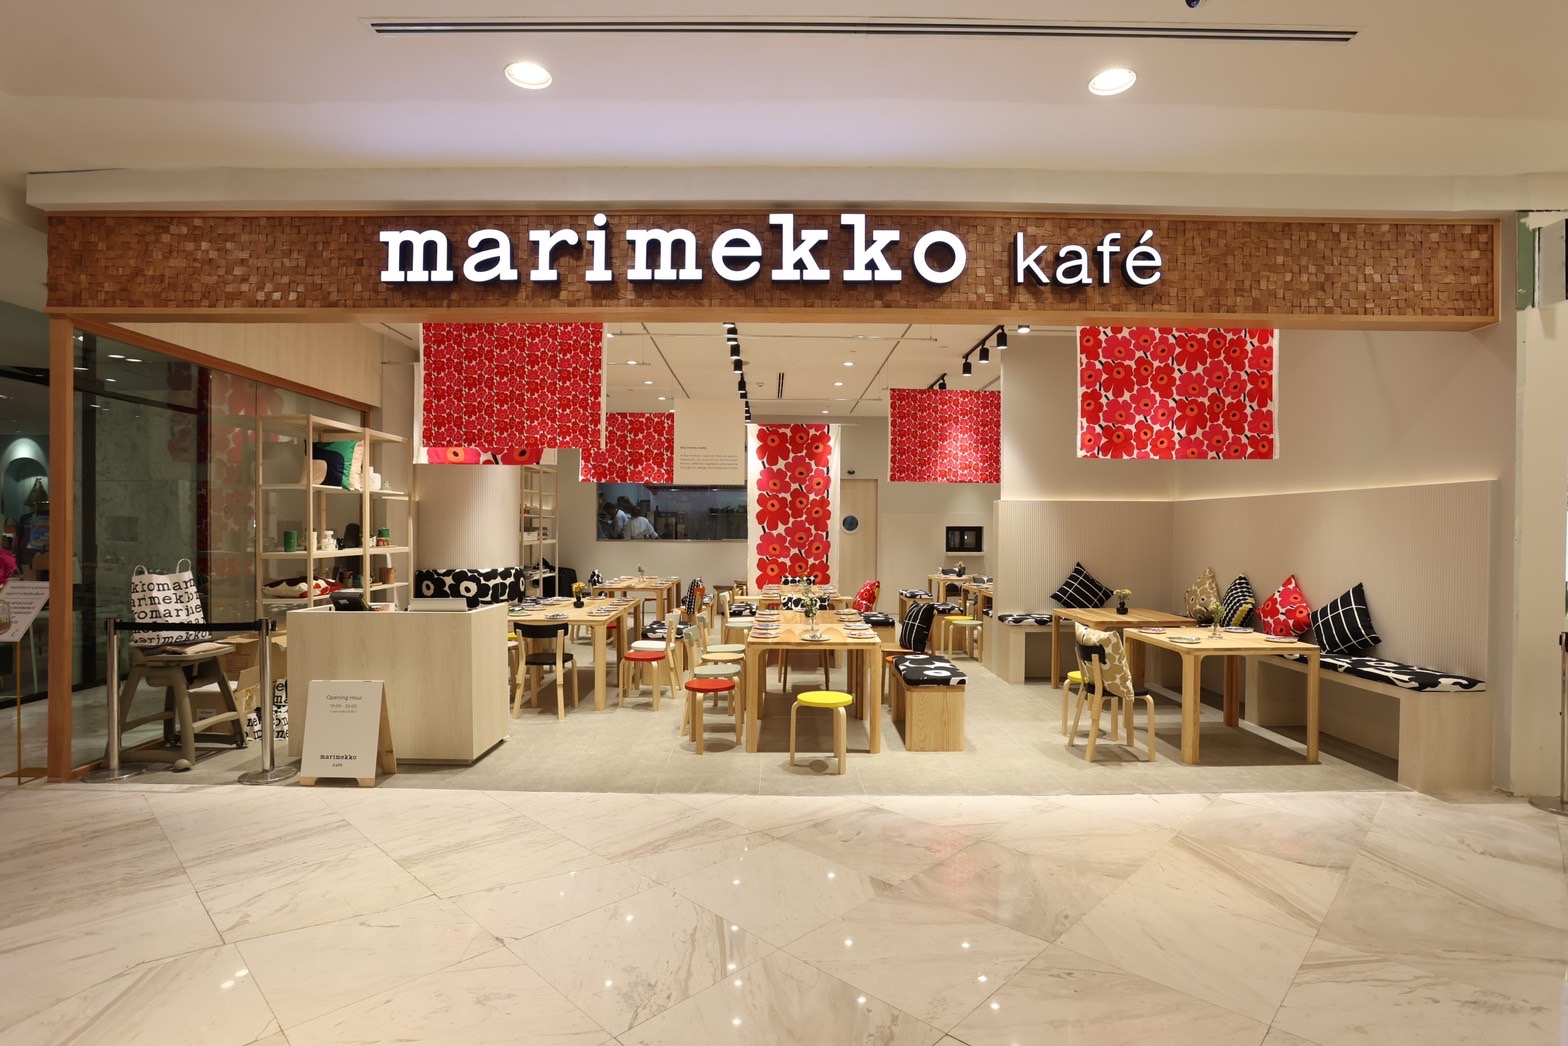 Marimekko เปิดตัว “Marimekko Kafé”  ครีเอทีฟไวบ์แห่งใหม่ใจกลางกรุง เนรมิตไลฟ์สไตล์สเปซเชื่อมต่อแรงบันดาลใจ ด้วยบรรยากาศดีไซน์สไตล์นอร์ดิก